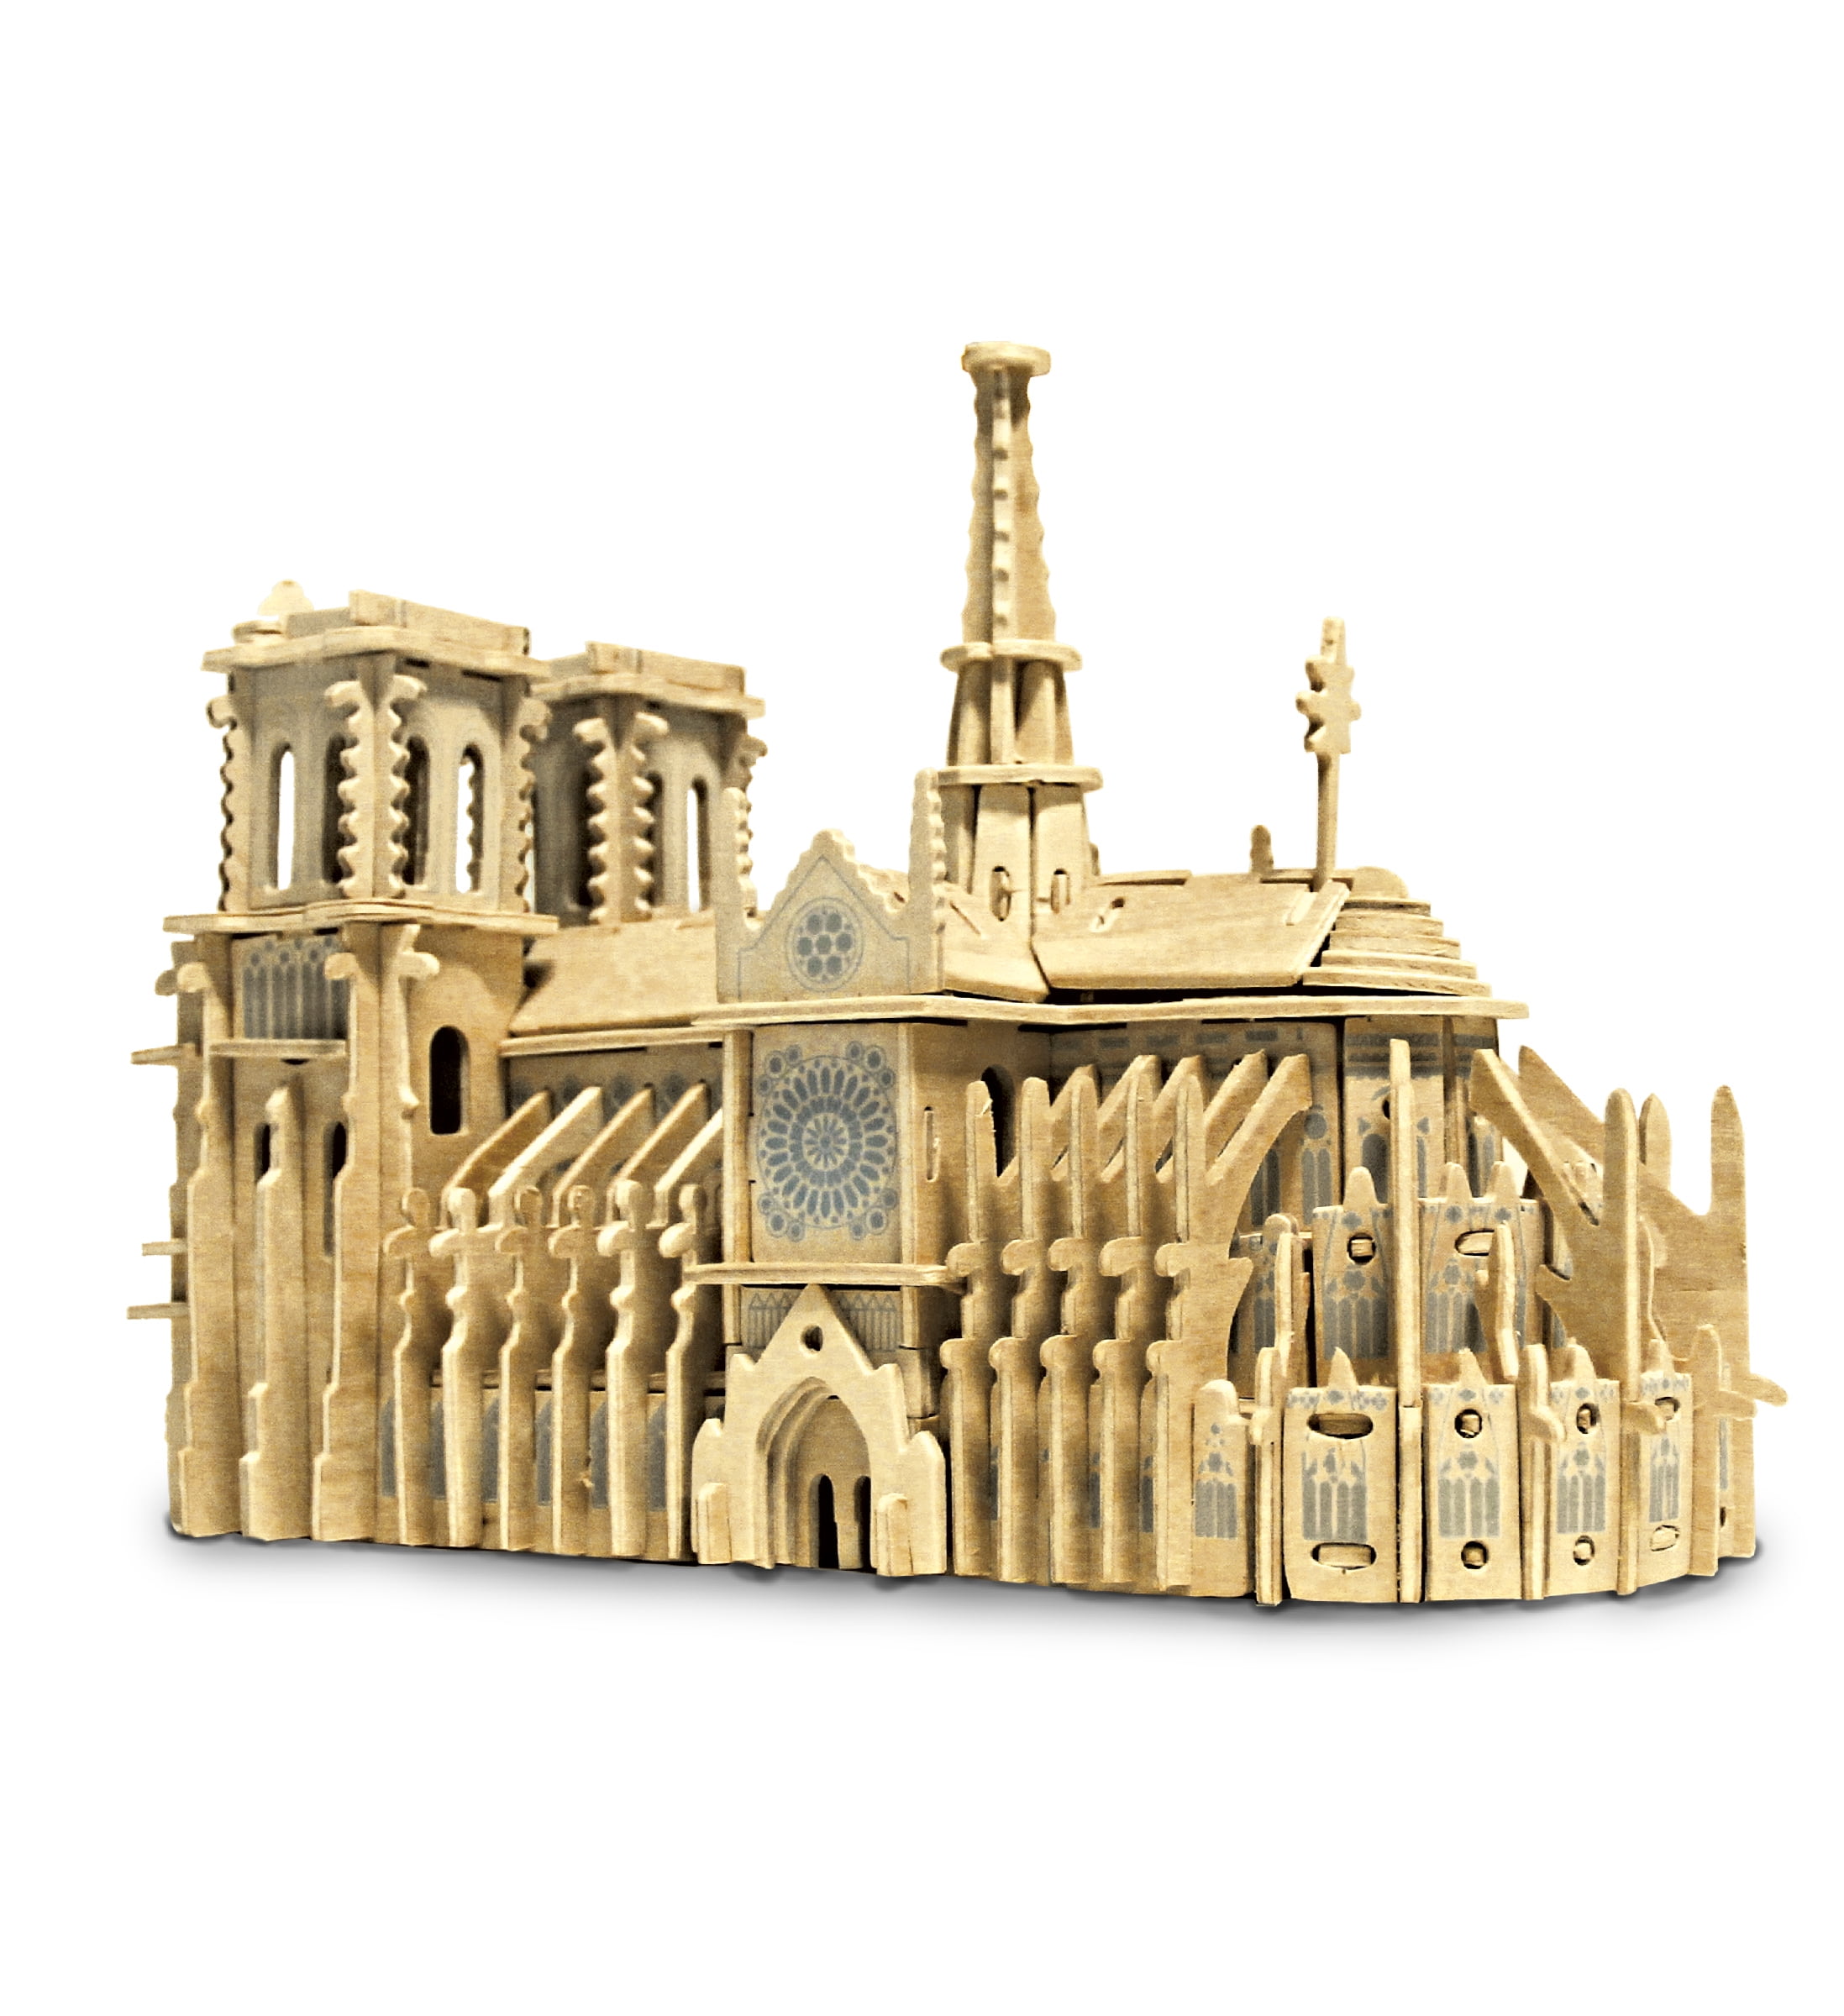 Noahs Ark Wooden Model Construction Kit 3D Woodcraft by YongModeler Run 